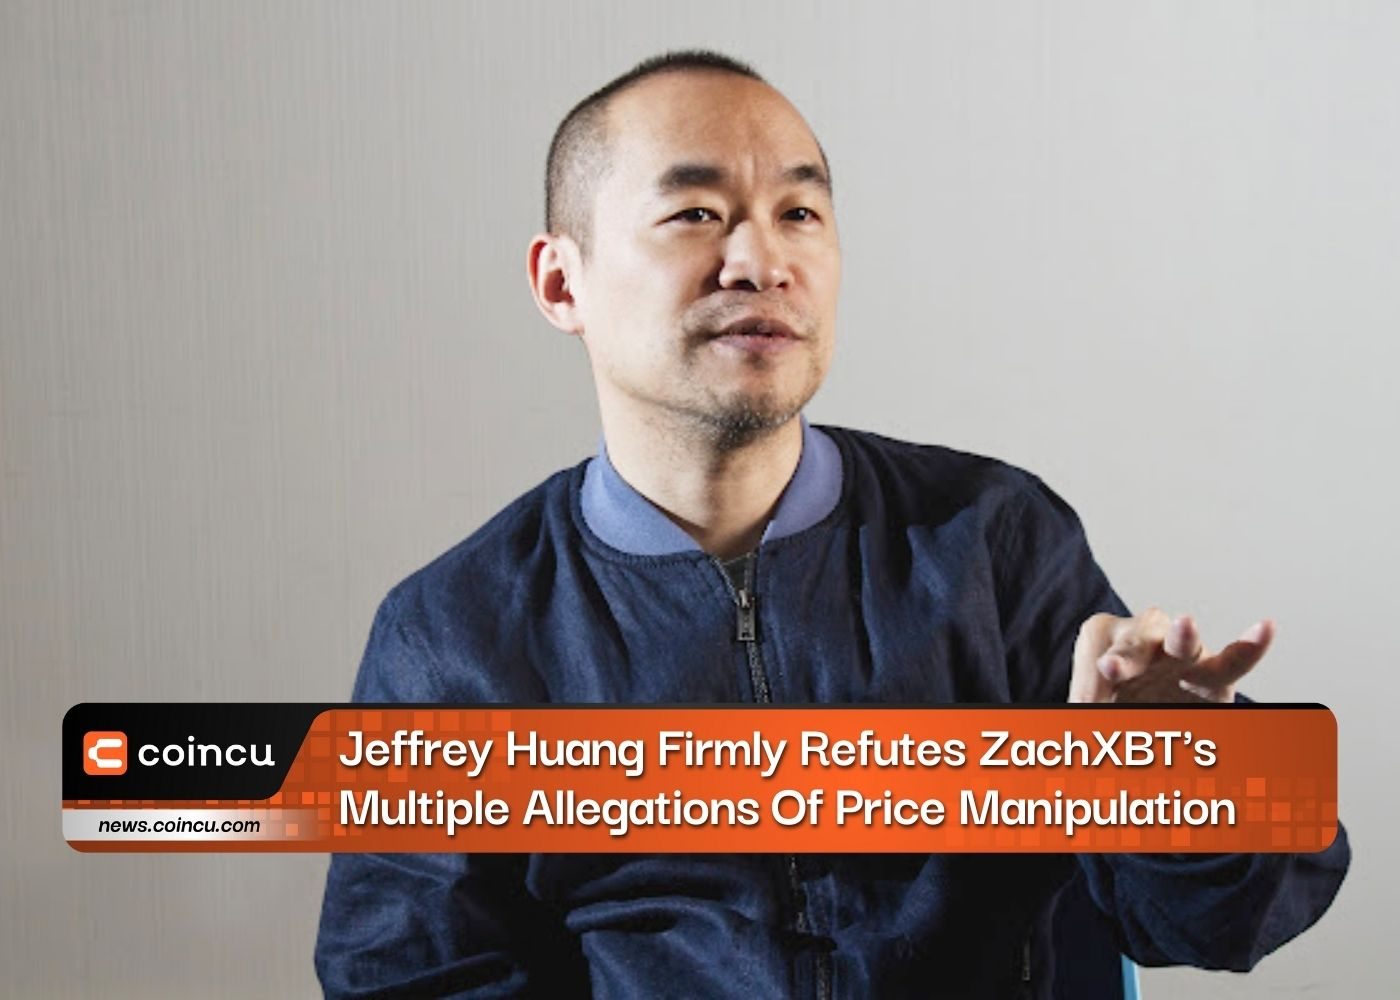 जेफरी हुआंग ने कीमत में हेरफेर के ZachXBT के कई आरोपों का दृढ़ता से खंडन किया